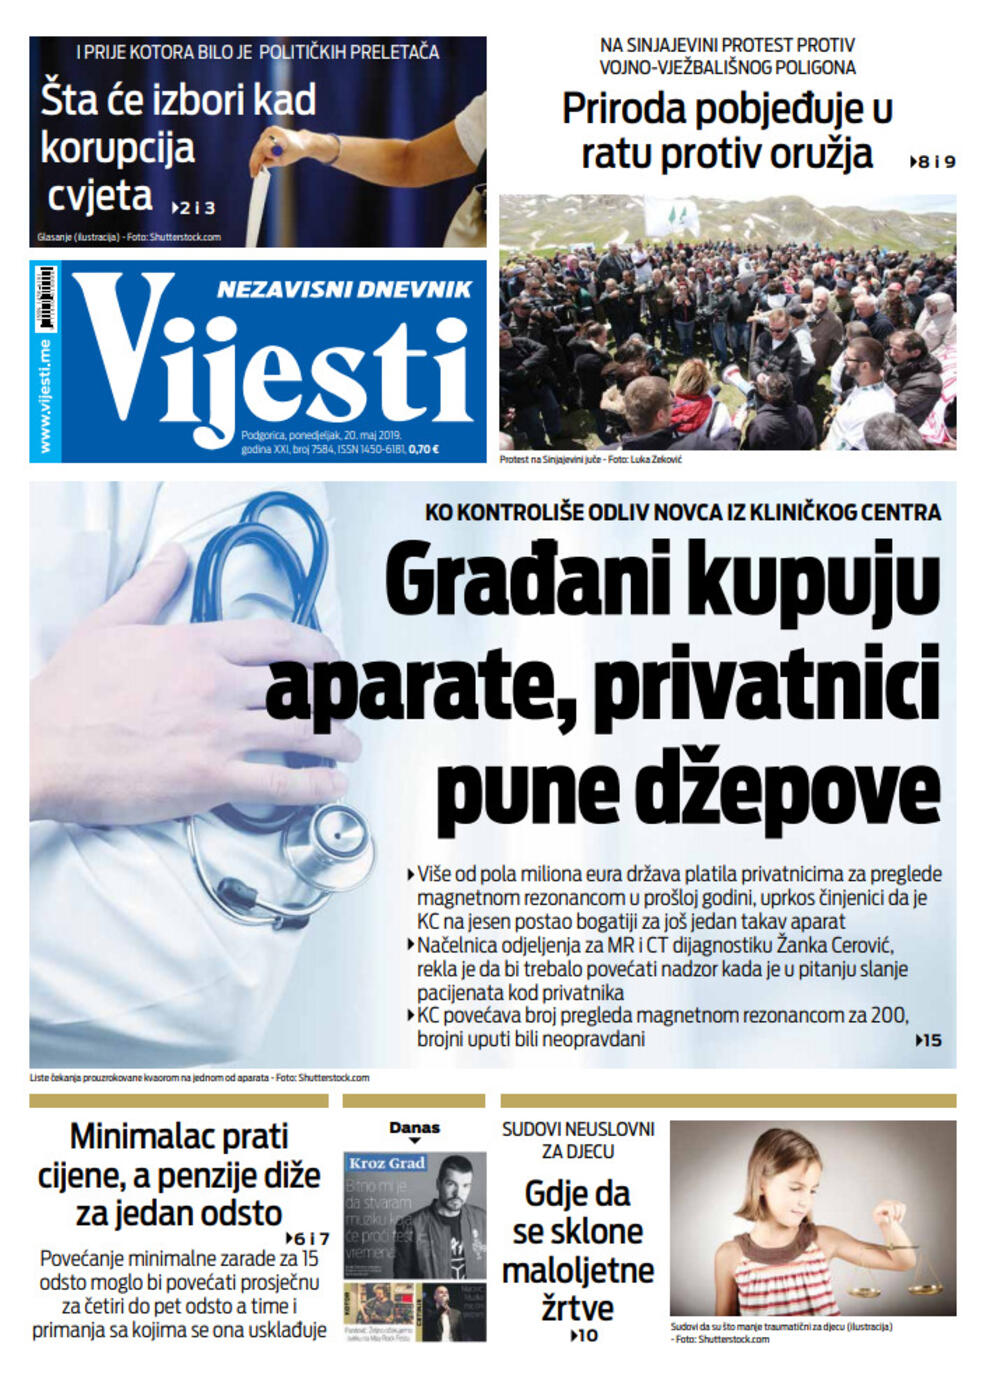 Naslovna strana "Vijesti" za 20. maj, Foto: Vijesti